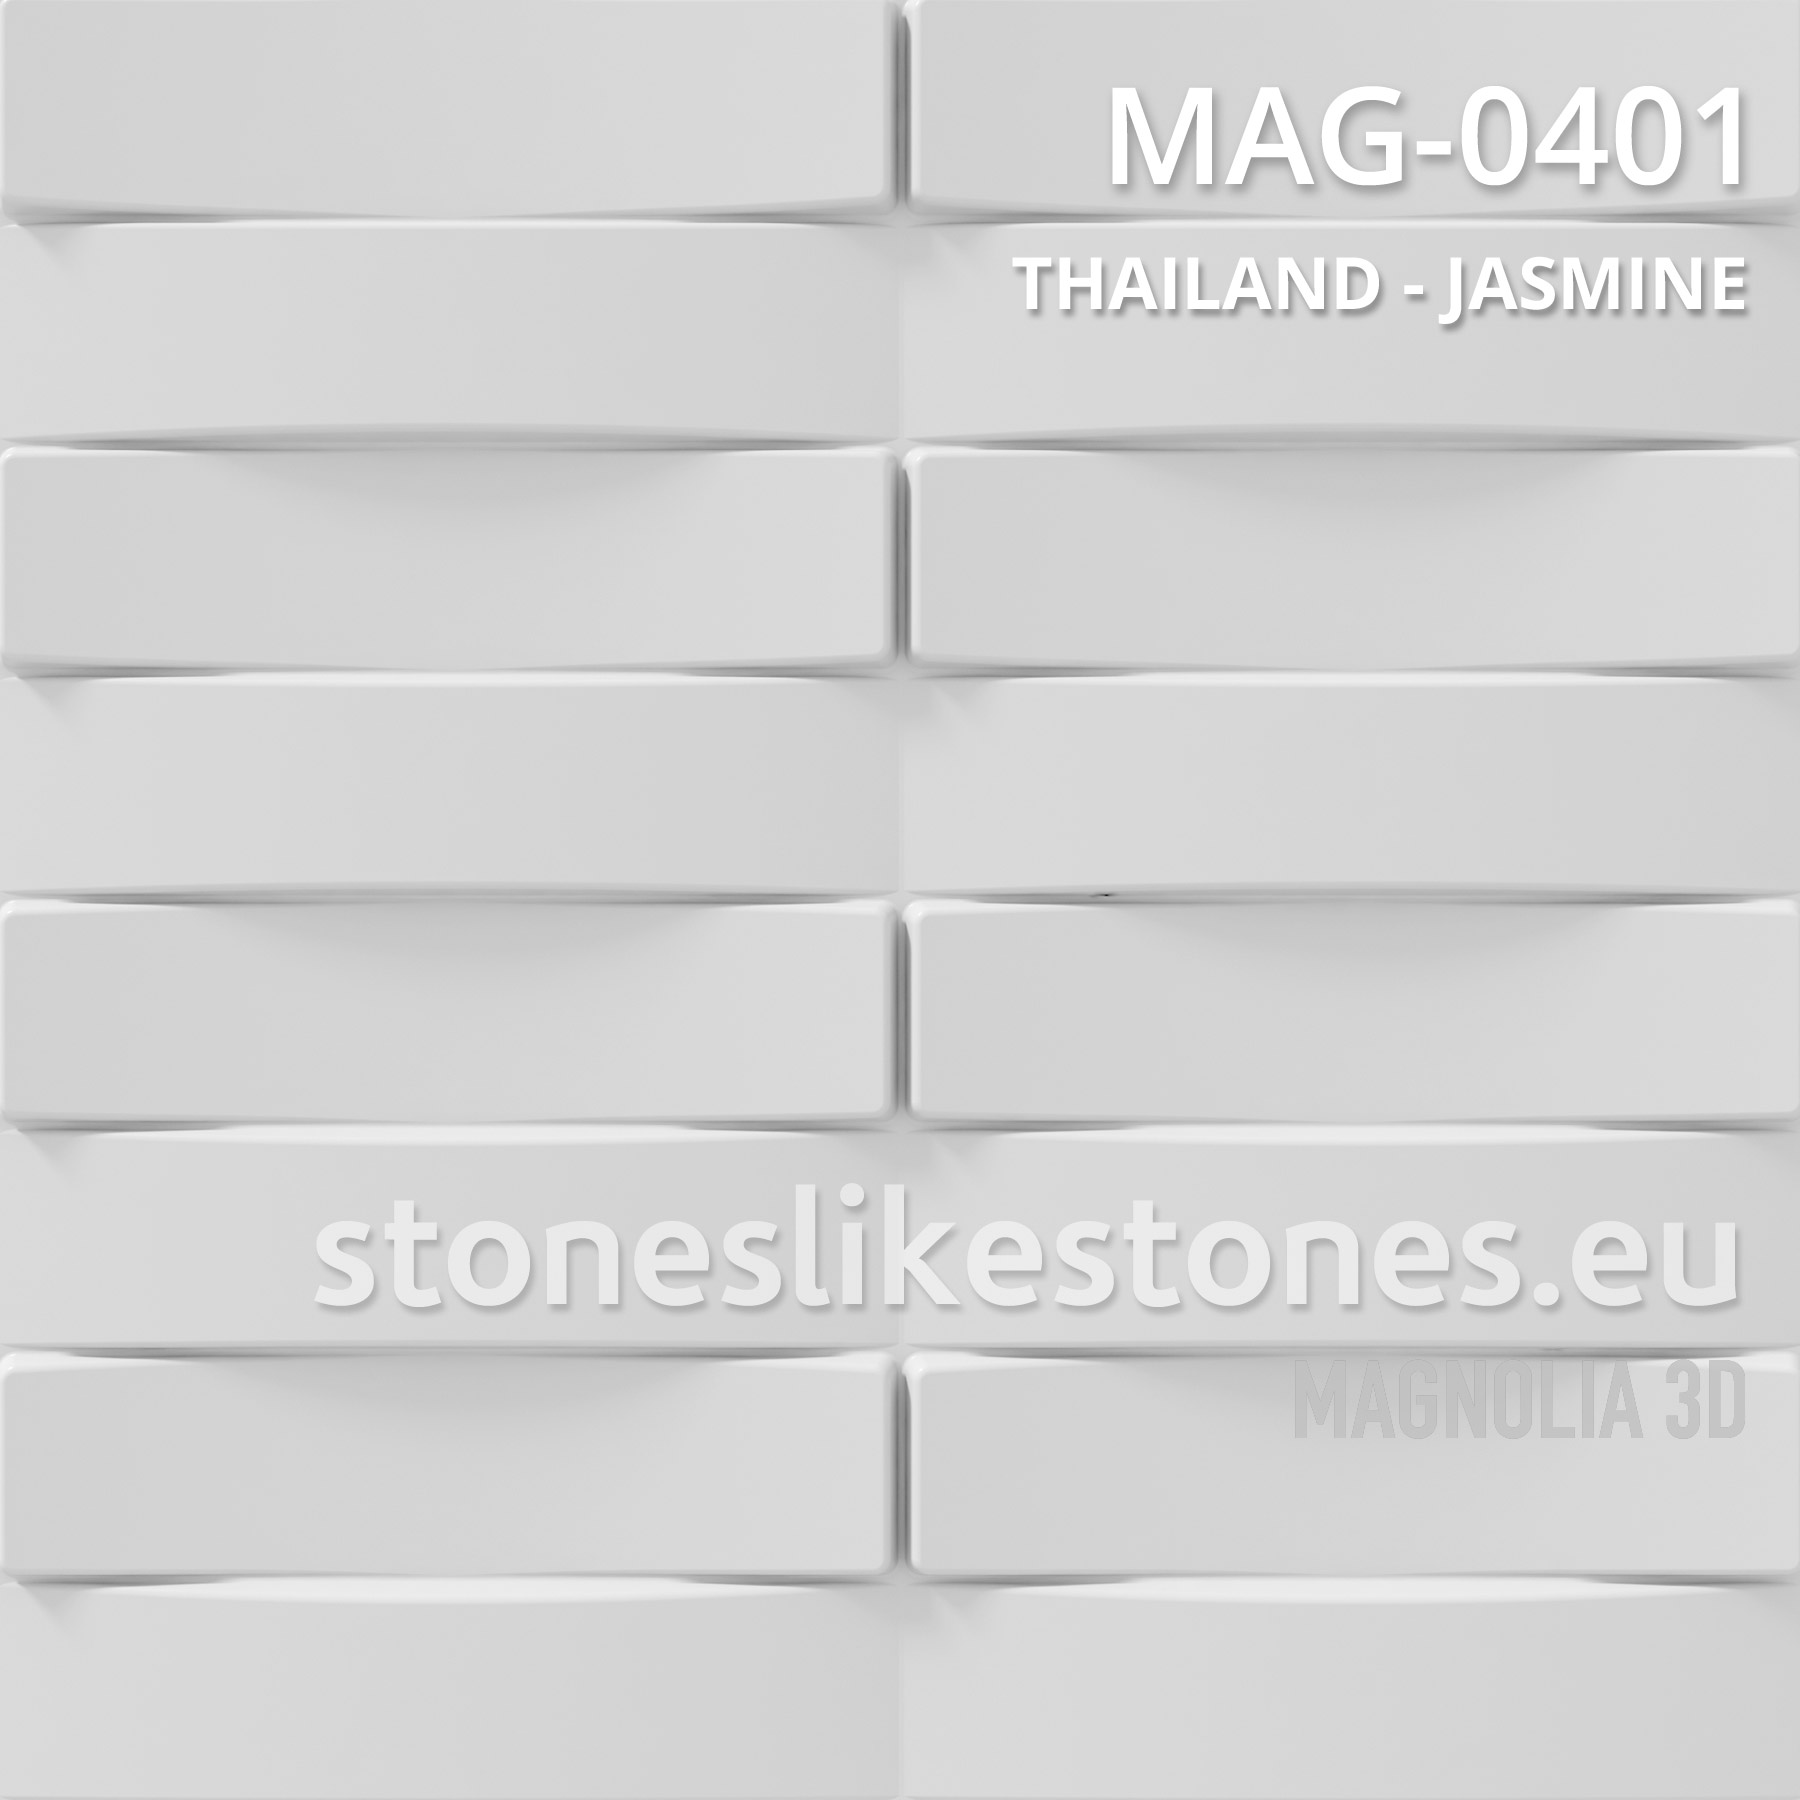 Magnolia 3D – MAG-0205 MARTINIQUE – COCOA